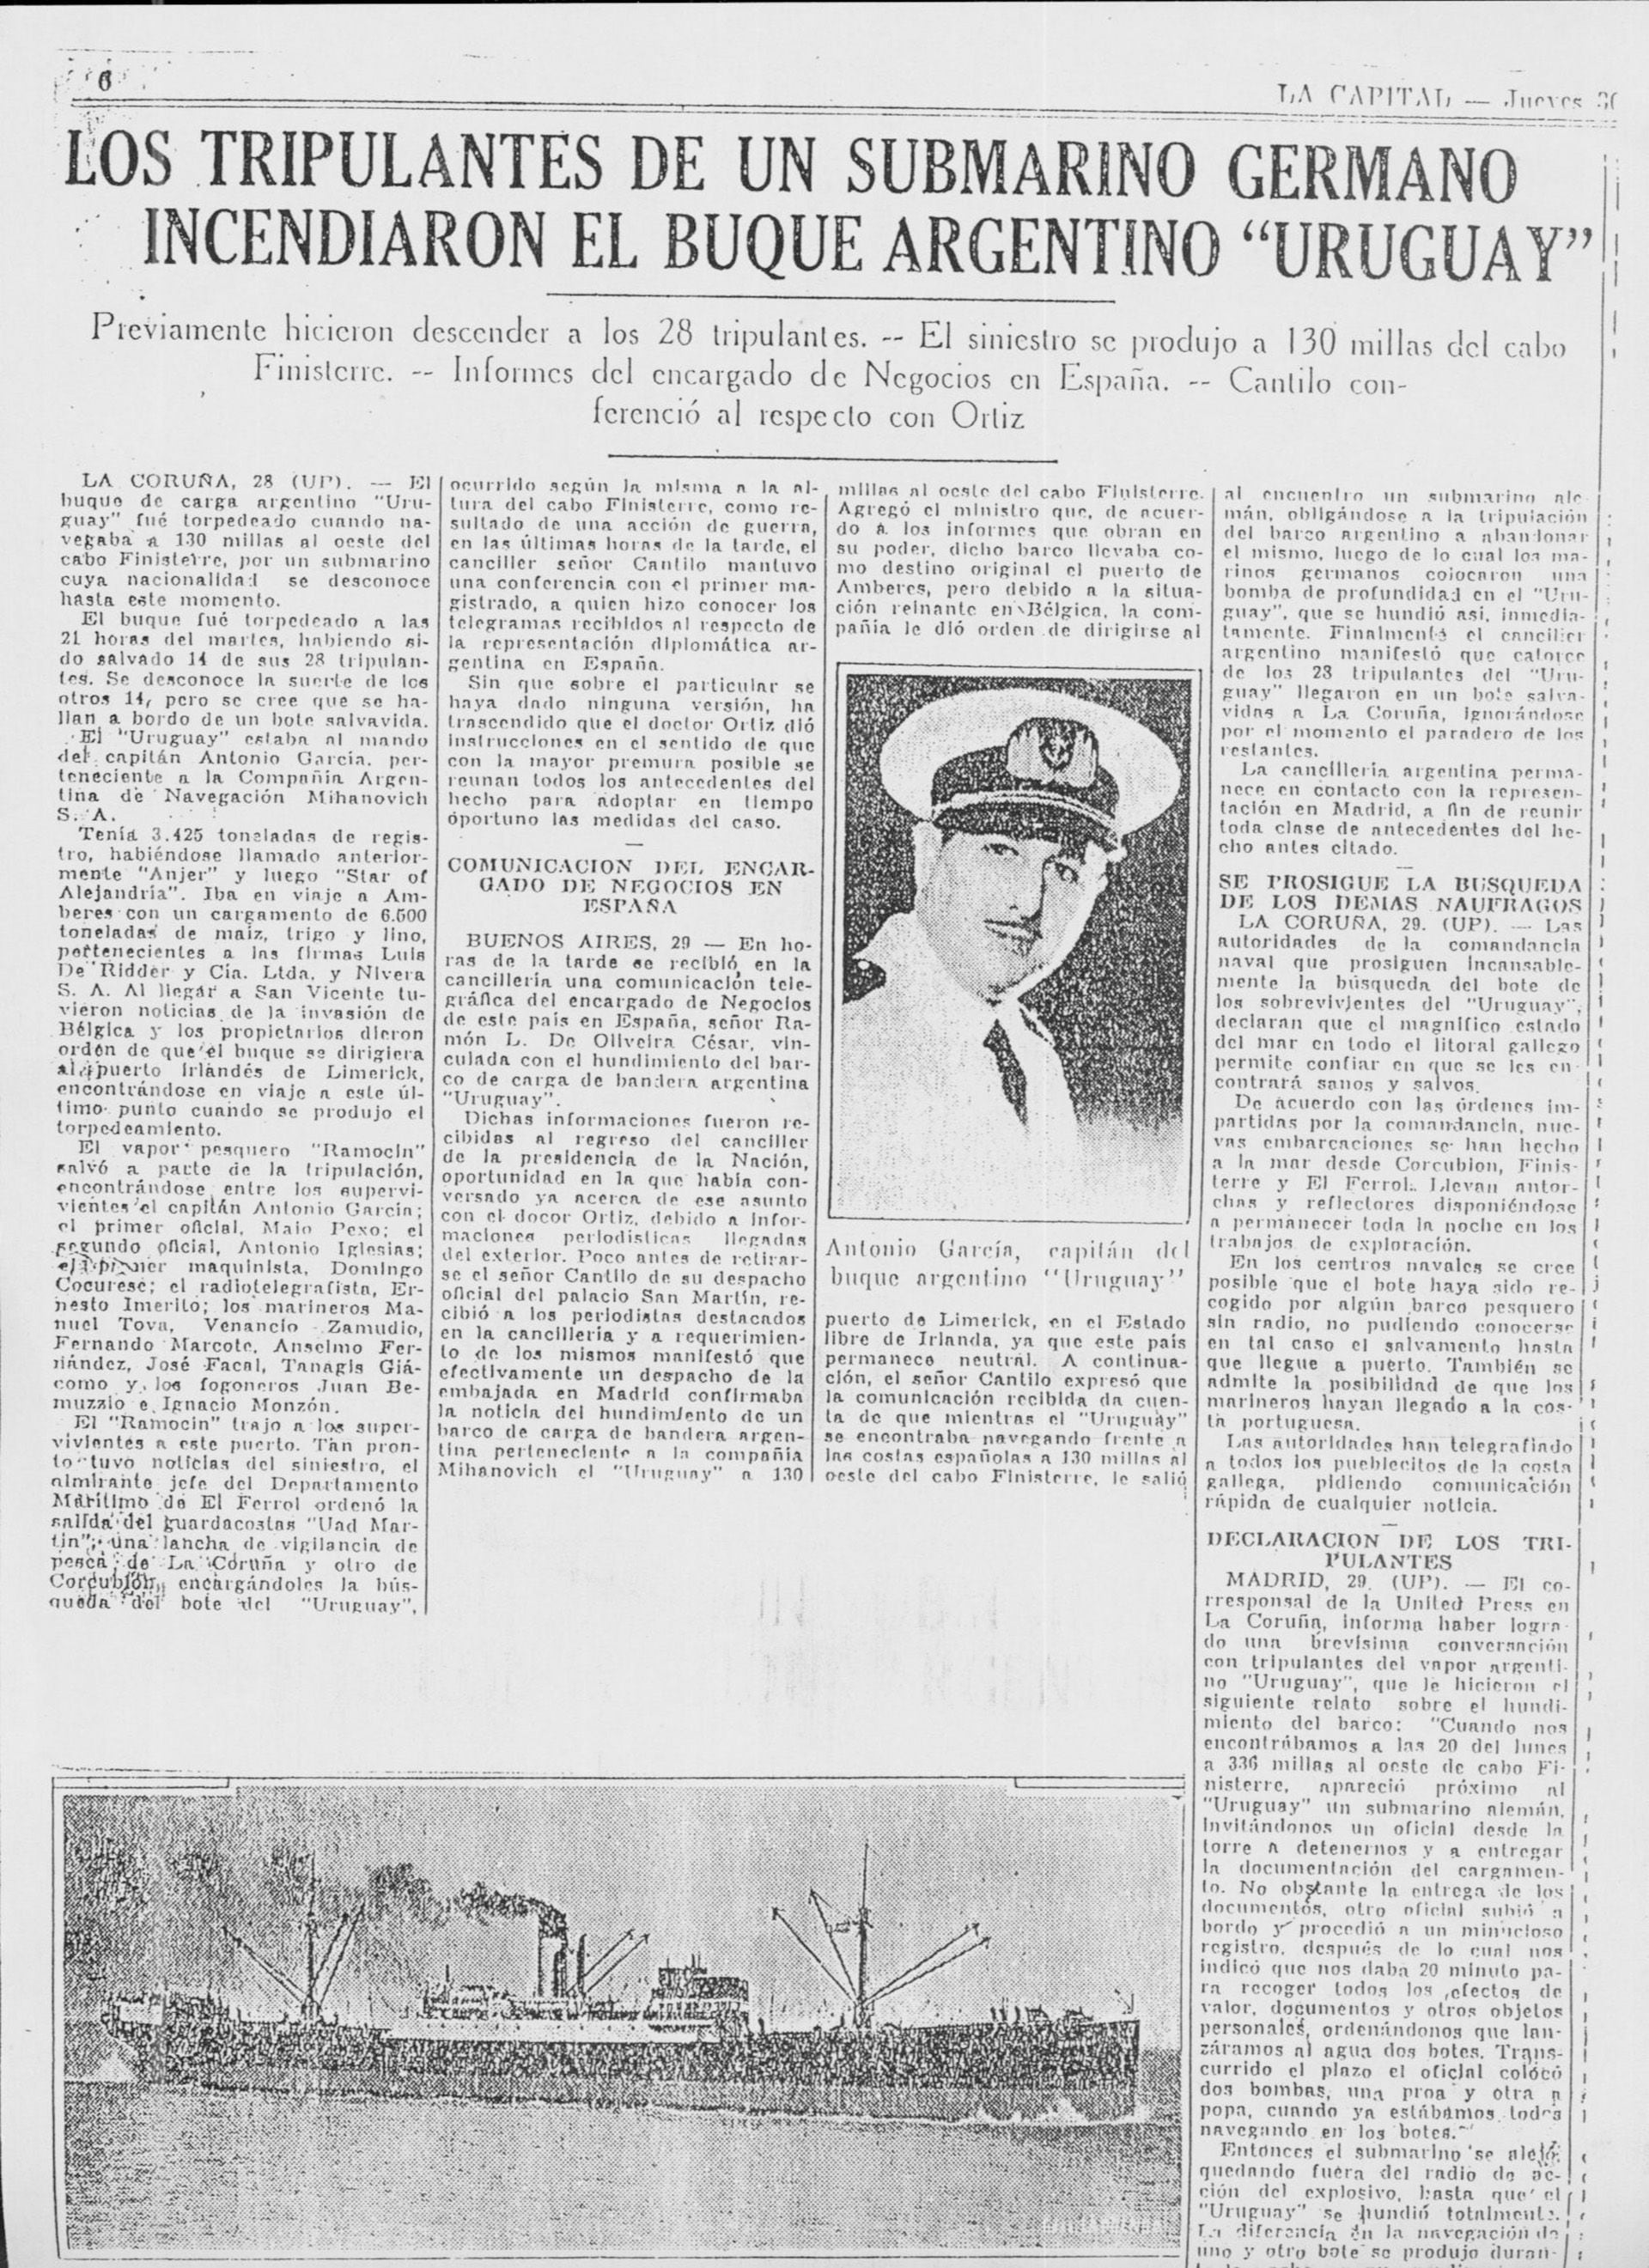 La nota del diario La Capital del 30 de mayo de 1940 informando sobre lo sucedido al vapor Uruguay. Se ve el mapa con la ubicación del ataque y la fotografía del capitán Antonio García